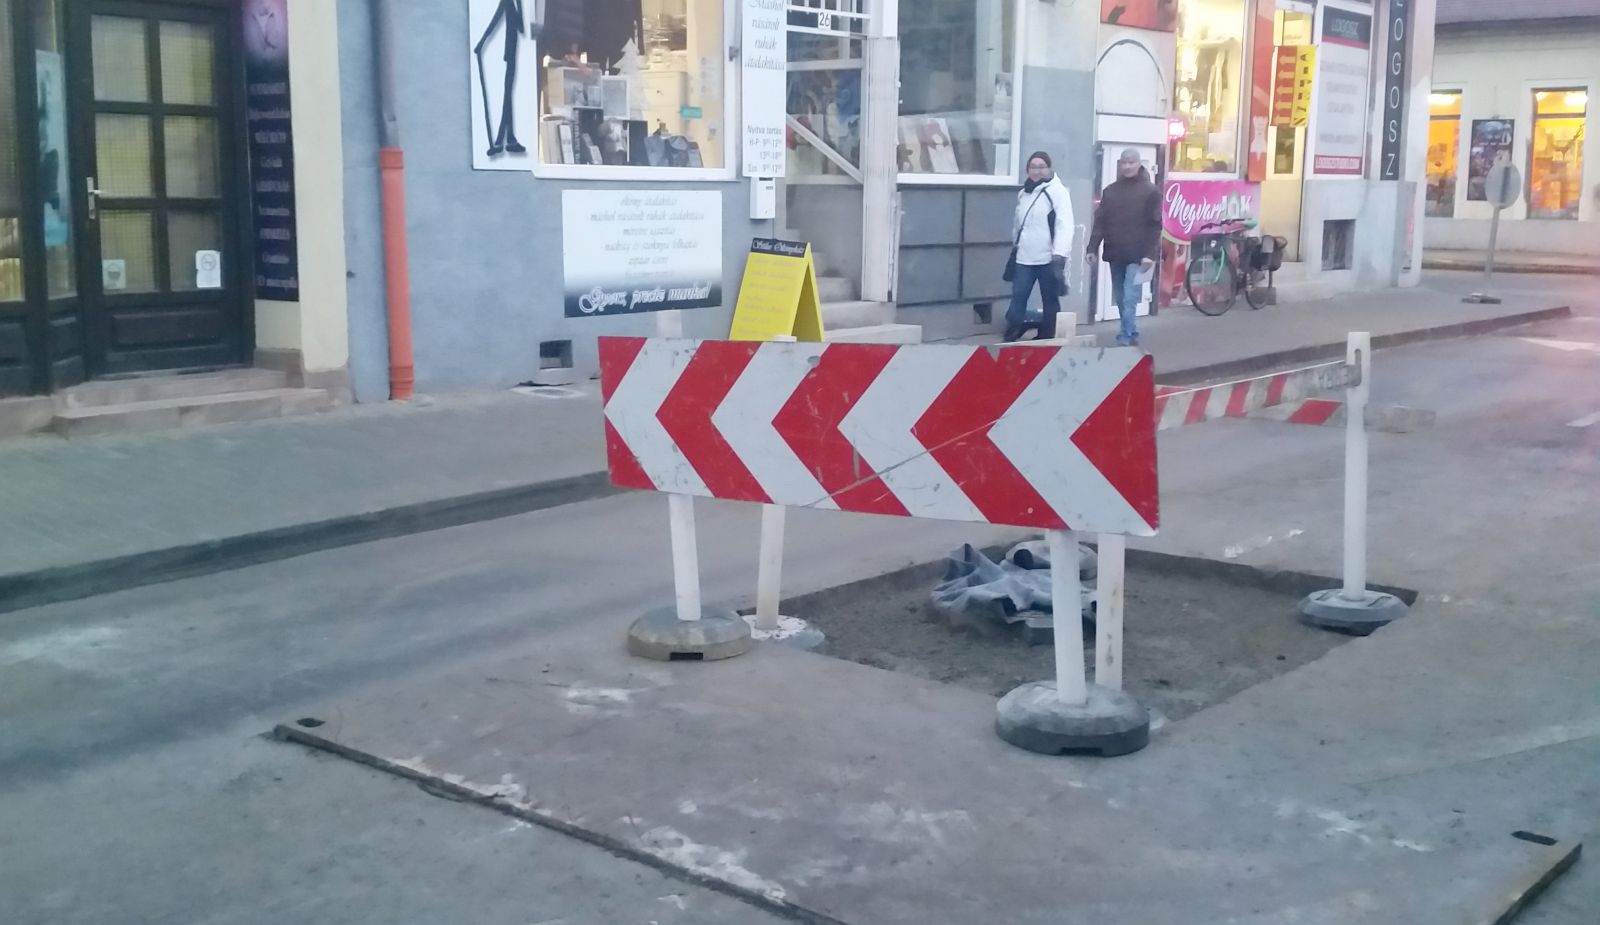 Még zajlik a Távírda utca felújítása – a közlekedők türelmét kérik